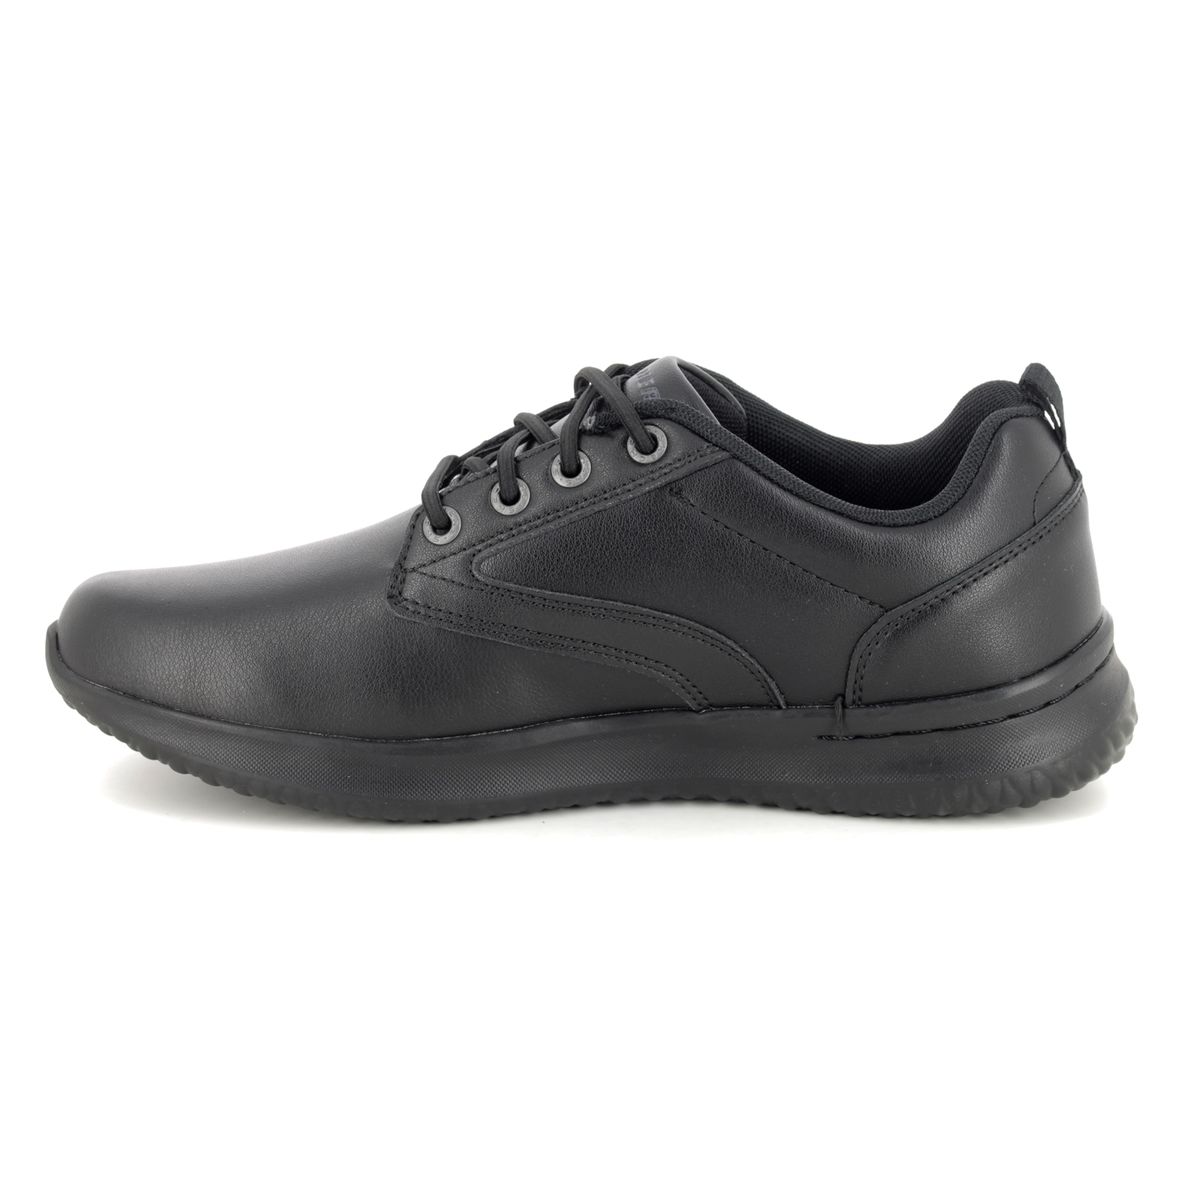 Skechers Delson Antigo Waterproof 65693 BBK Black comfort shoes